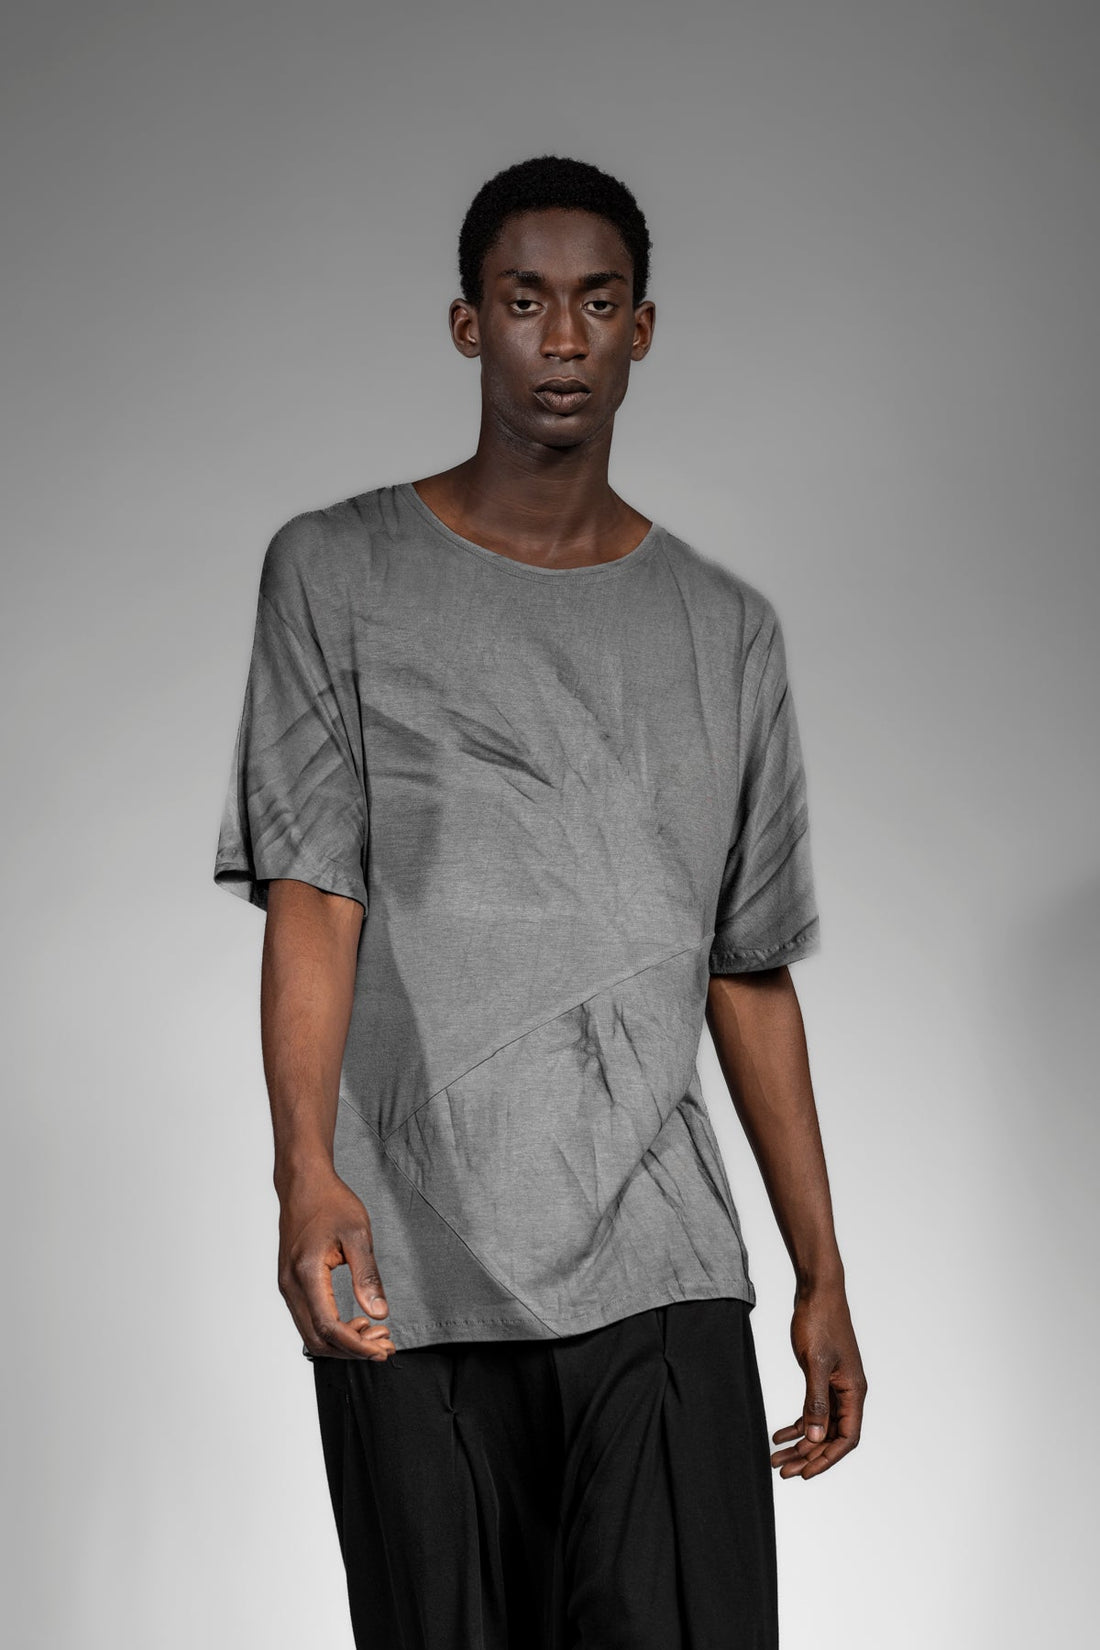 eigensinnig wien | Thaler | Unkonventionelles Designer Bambus T-Shirt in Grau